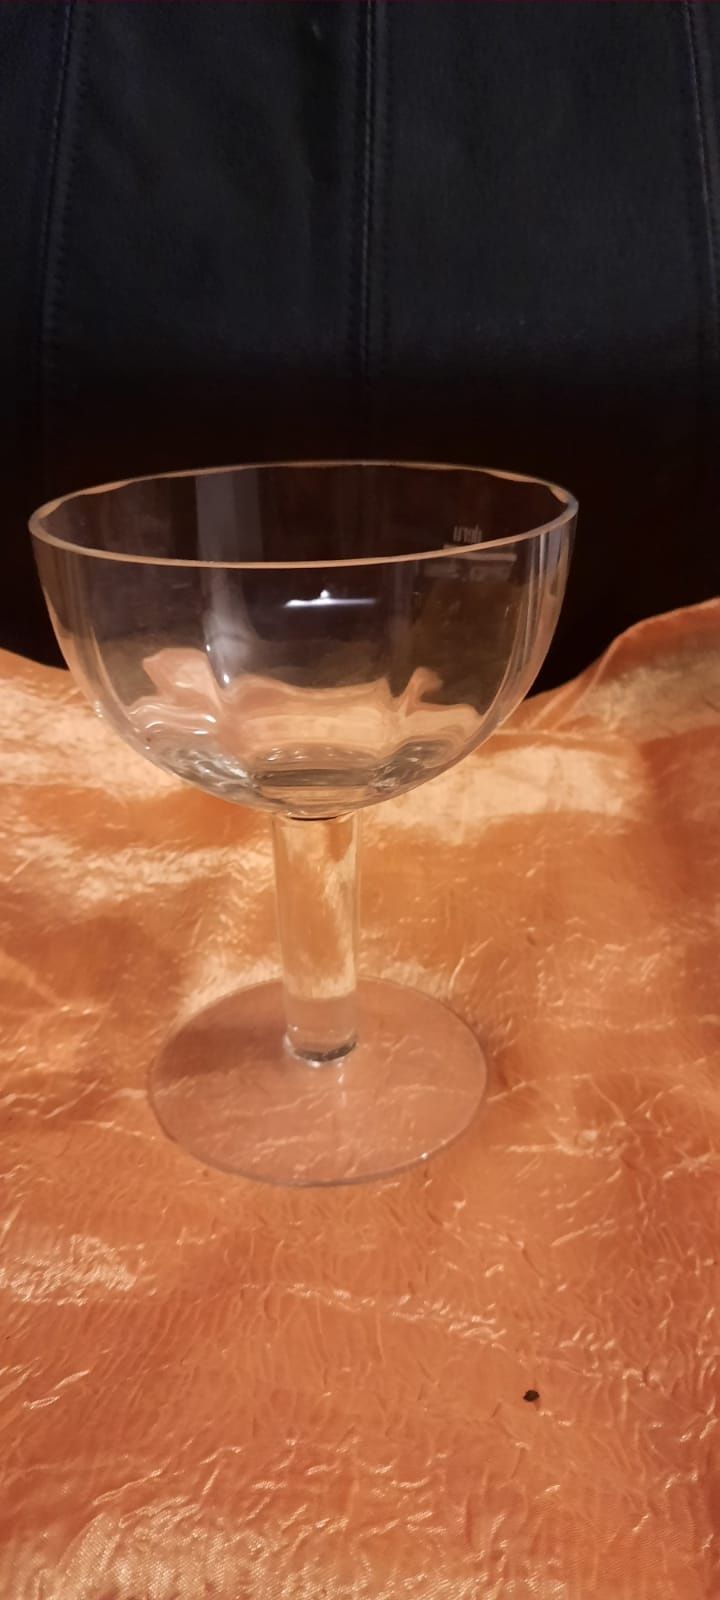 Cupa de sticla vand